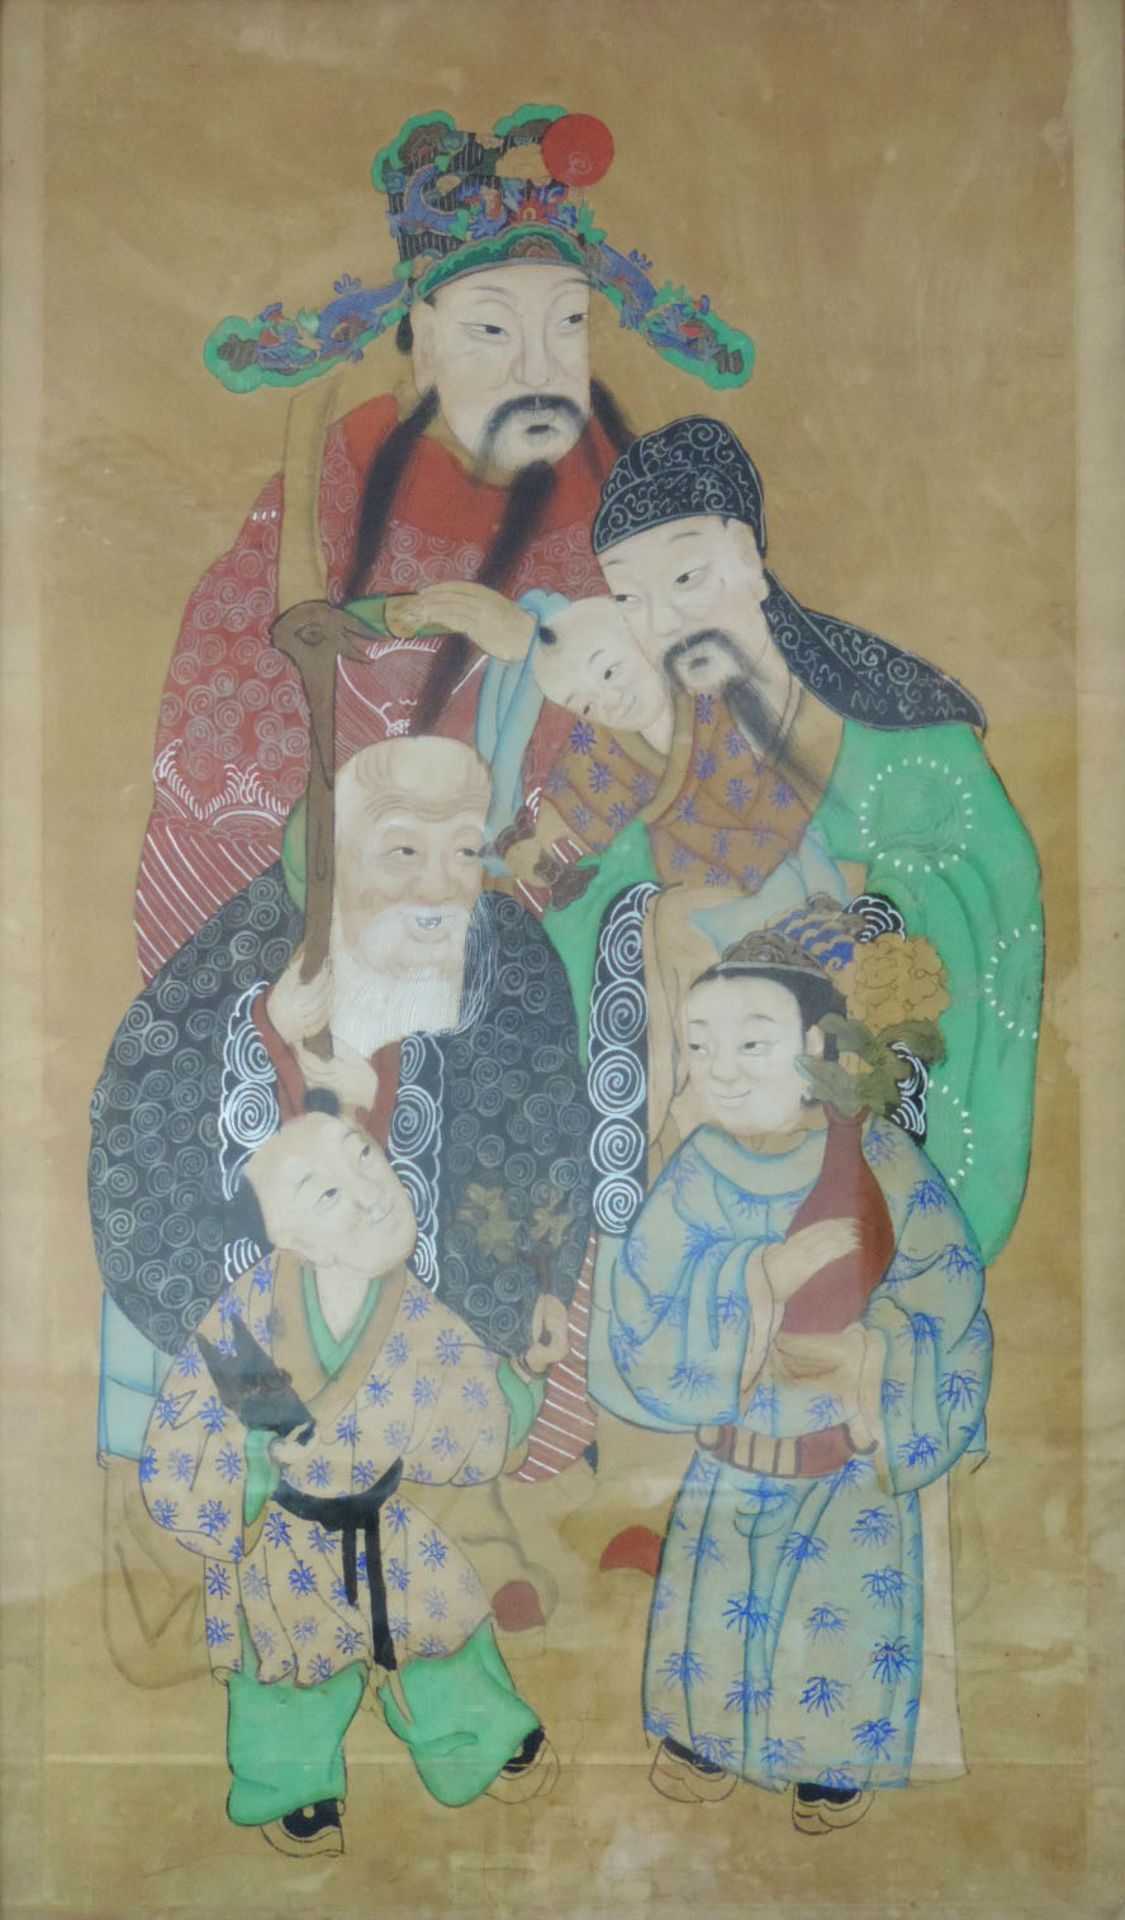 Aquarell mit verschiedenen Göttern und historischen Figuren, China/Japan.116 cm x 69 cm. Gemalt,